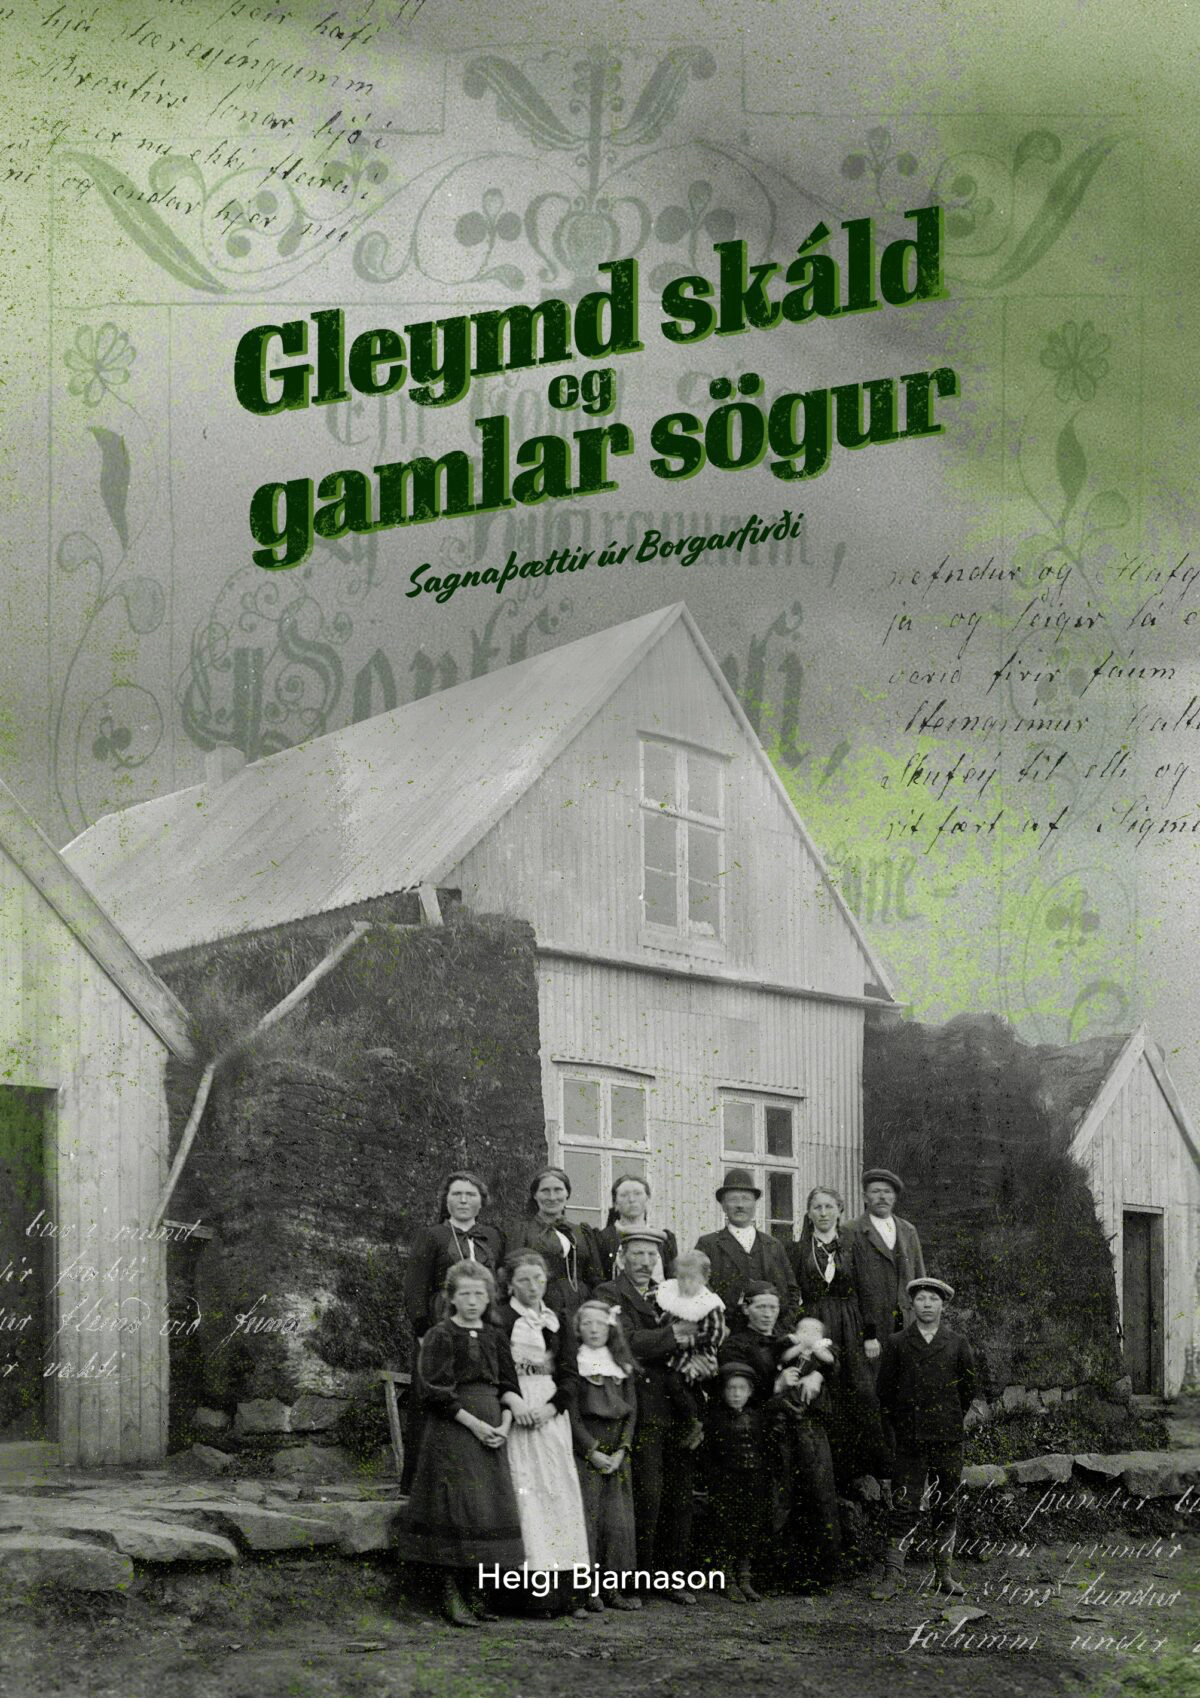 Featured image for “Bókakynning í Safnahúsi Borgarfjarðar 5. október nk.”